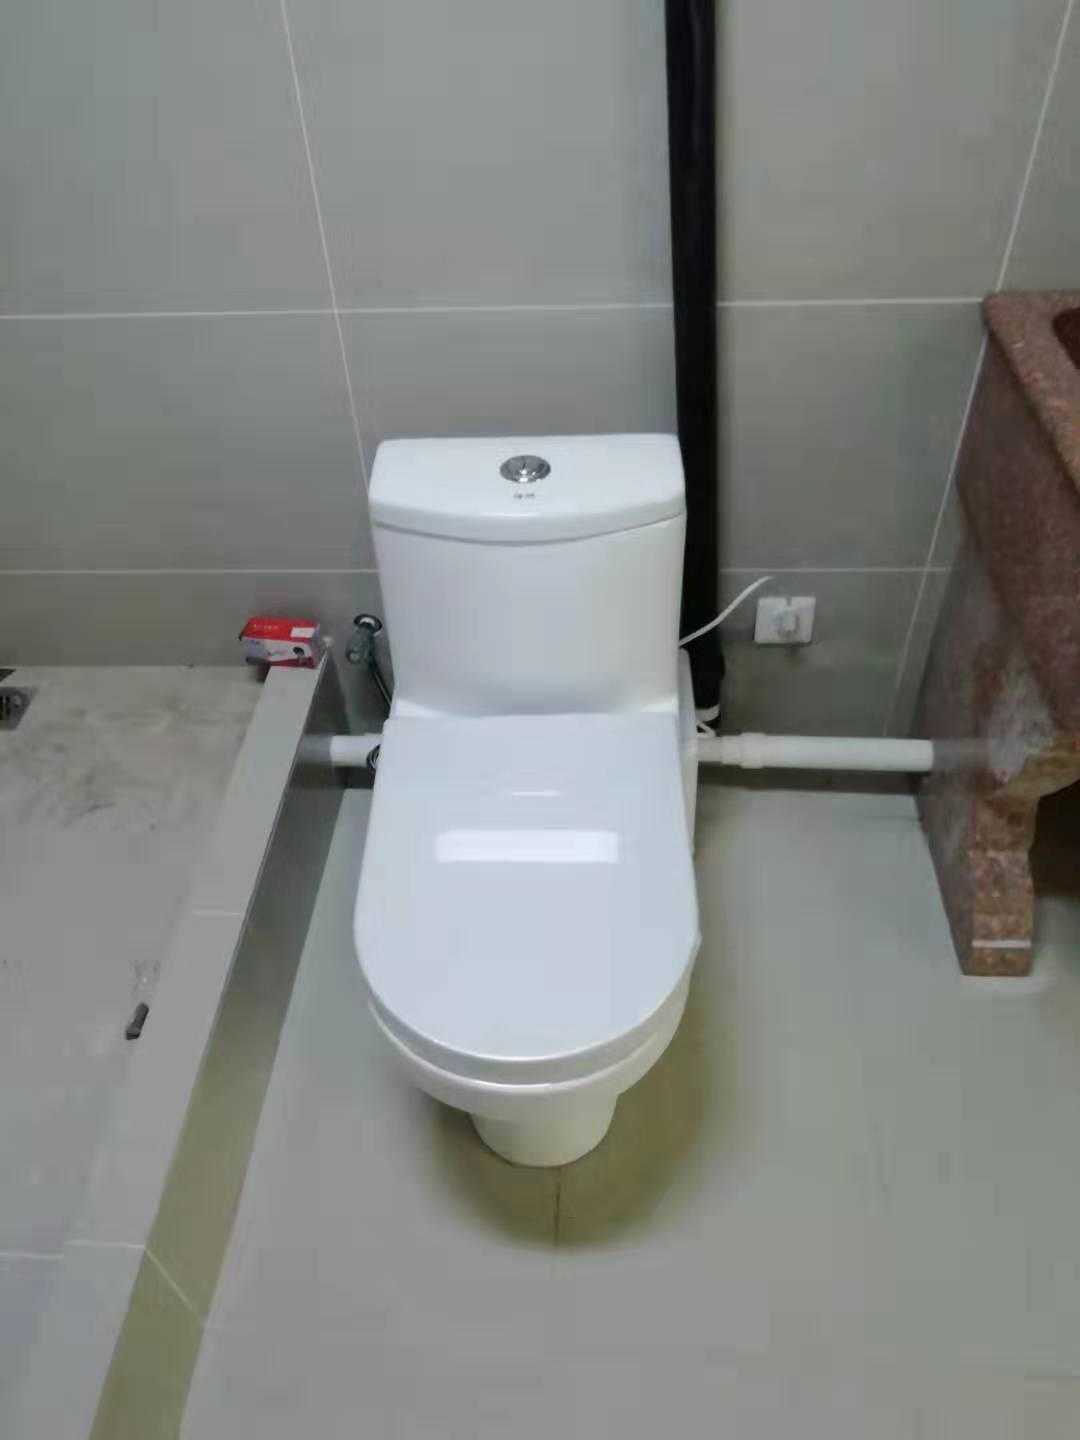 衛生間污水提升泵